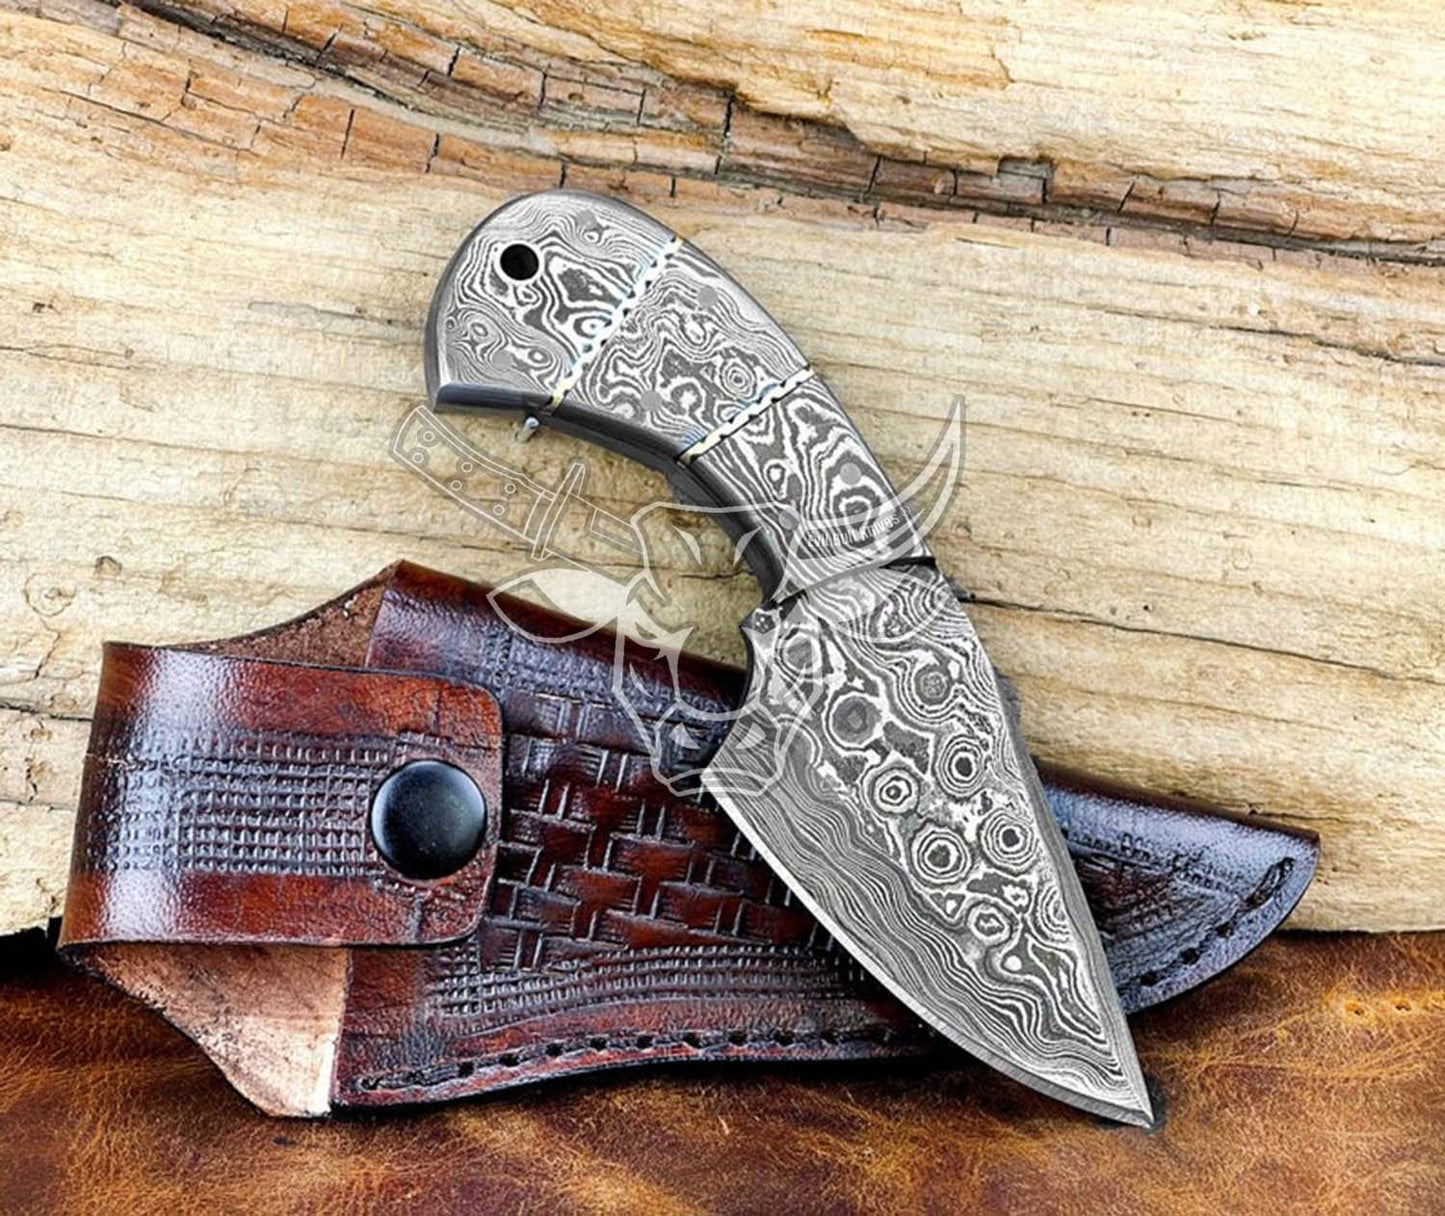 EBK-112 Custom Handmade Damascus Skinner Handmade Fixed Blade Knife with Leather Sheath,Full Tang Damascus Handle Knife, Christmas Day Gift